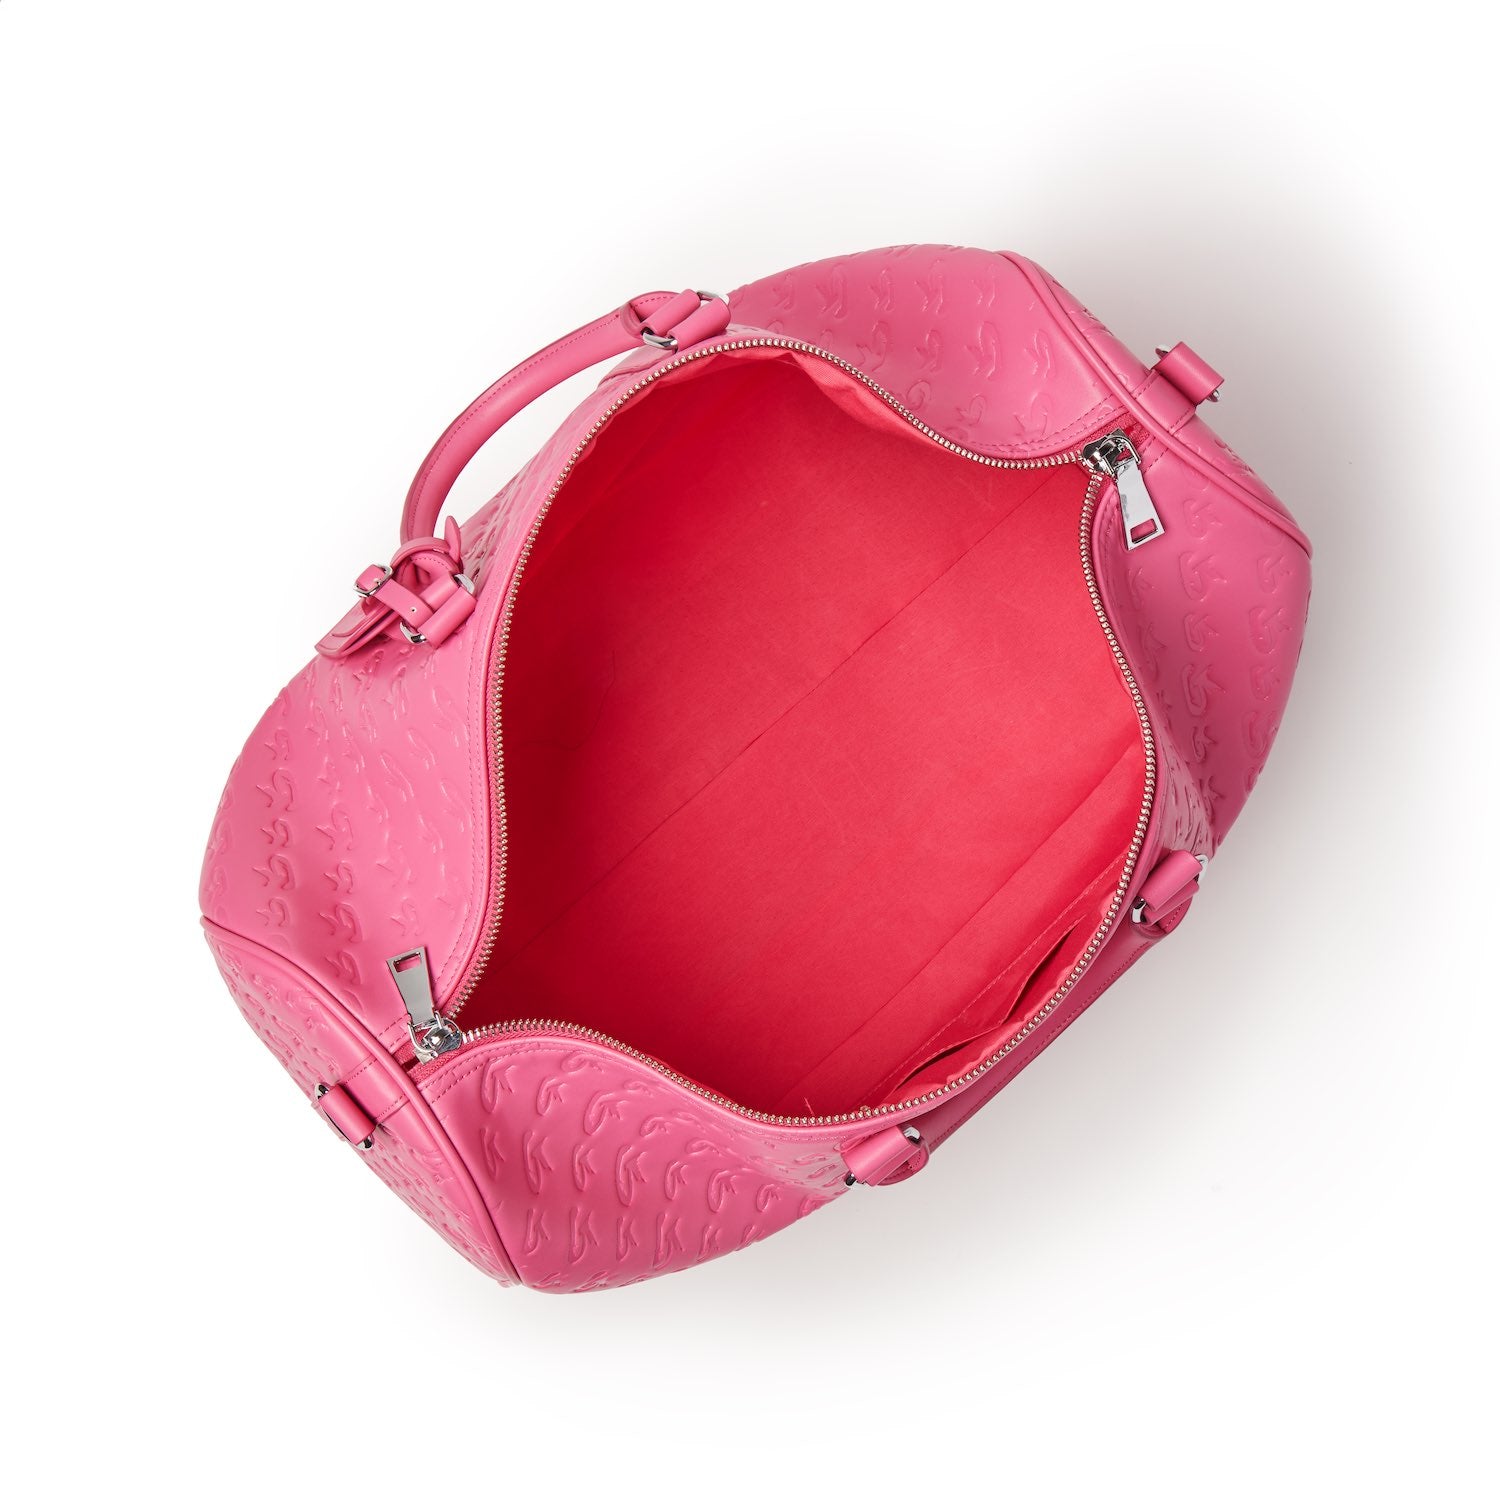 MONOGRAM MINI BUCKET BAG HOT PINK – Glam-Aholic Lifestyle